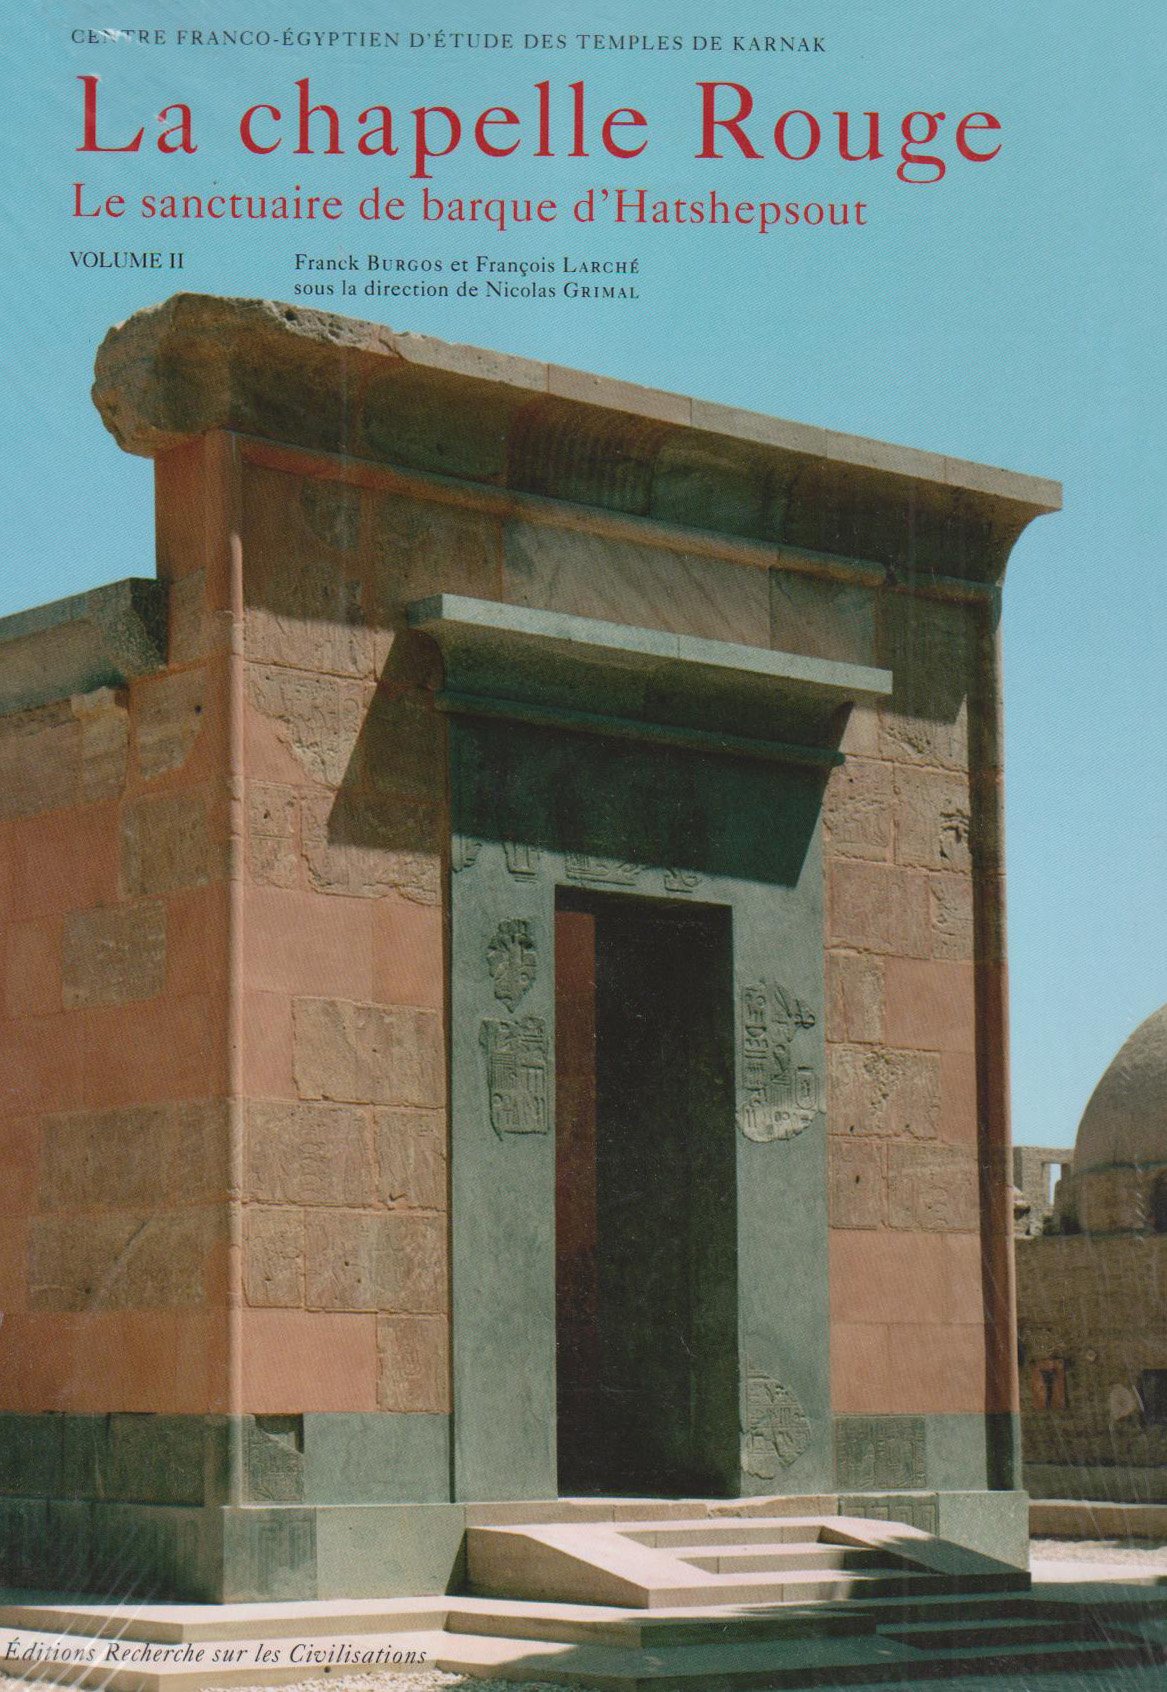 ÉPUISÉ - La Chapelle Rouge. le Sanctuaire de Barque d'Hatshepsout. Volume II, 2008, 352 p.